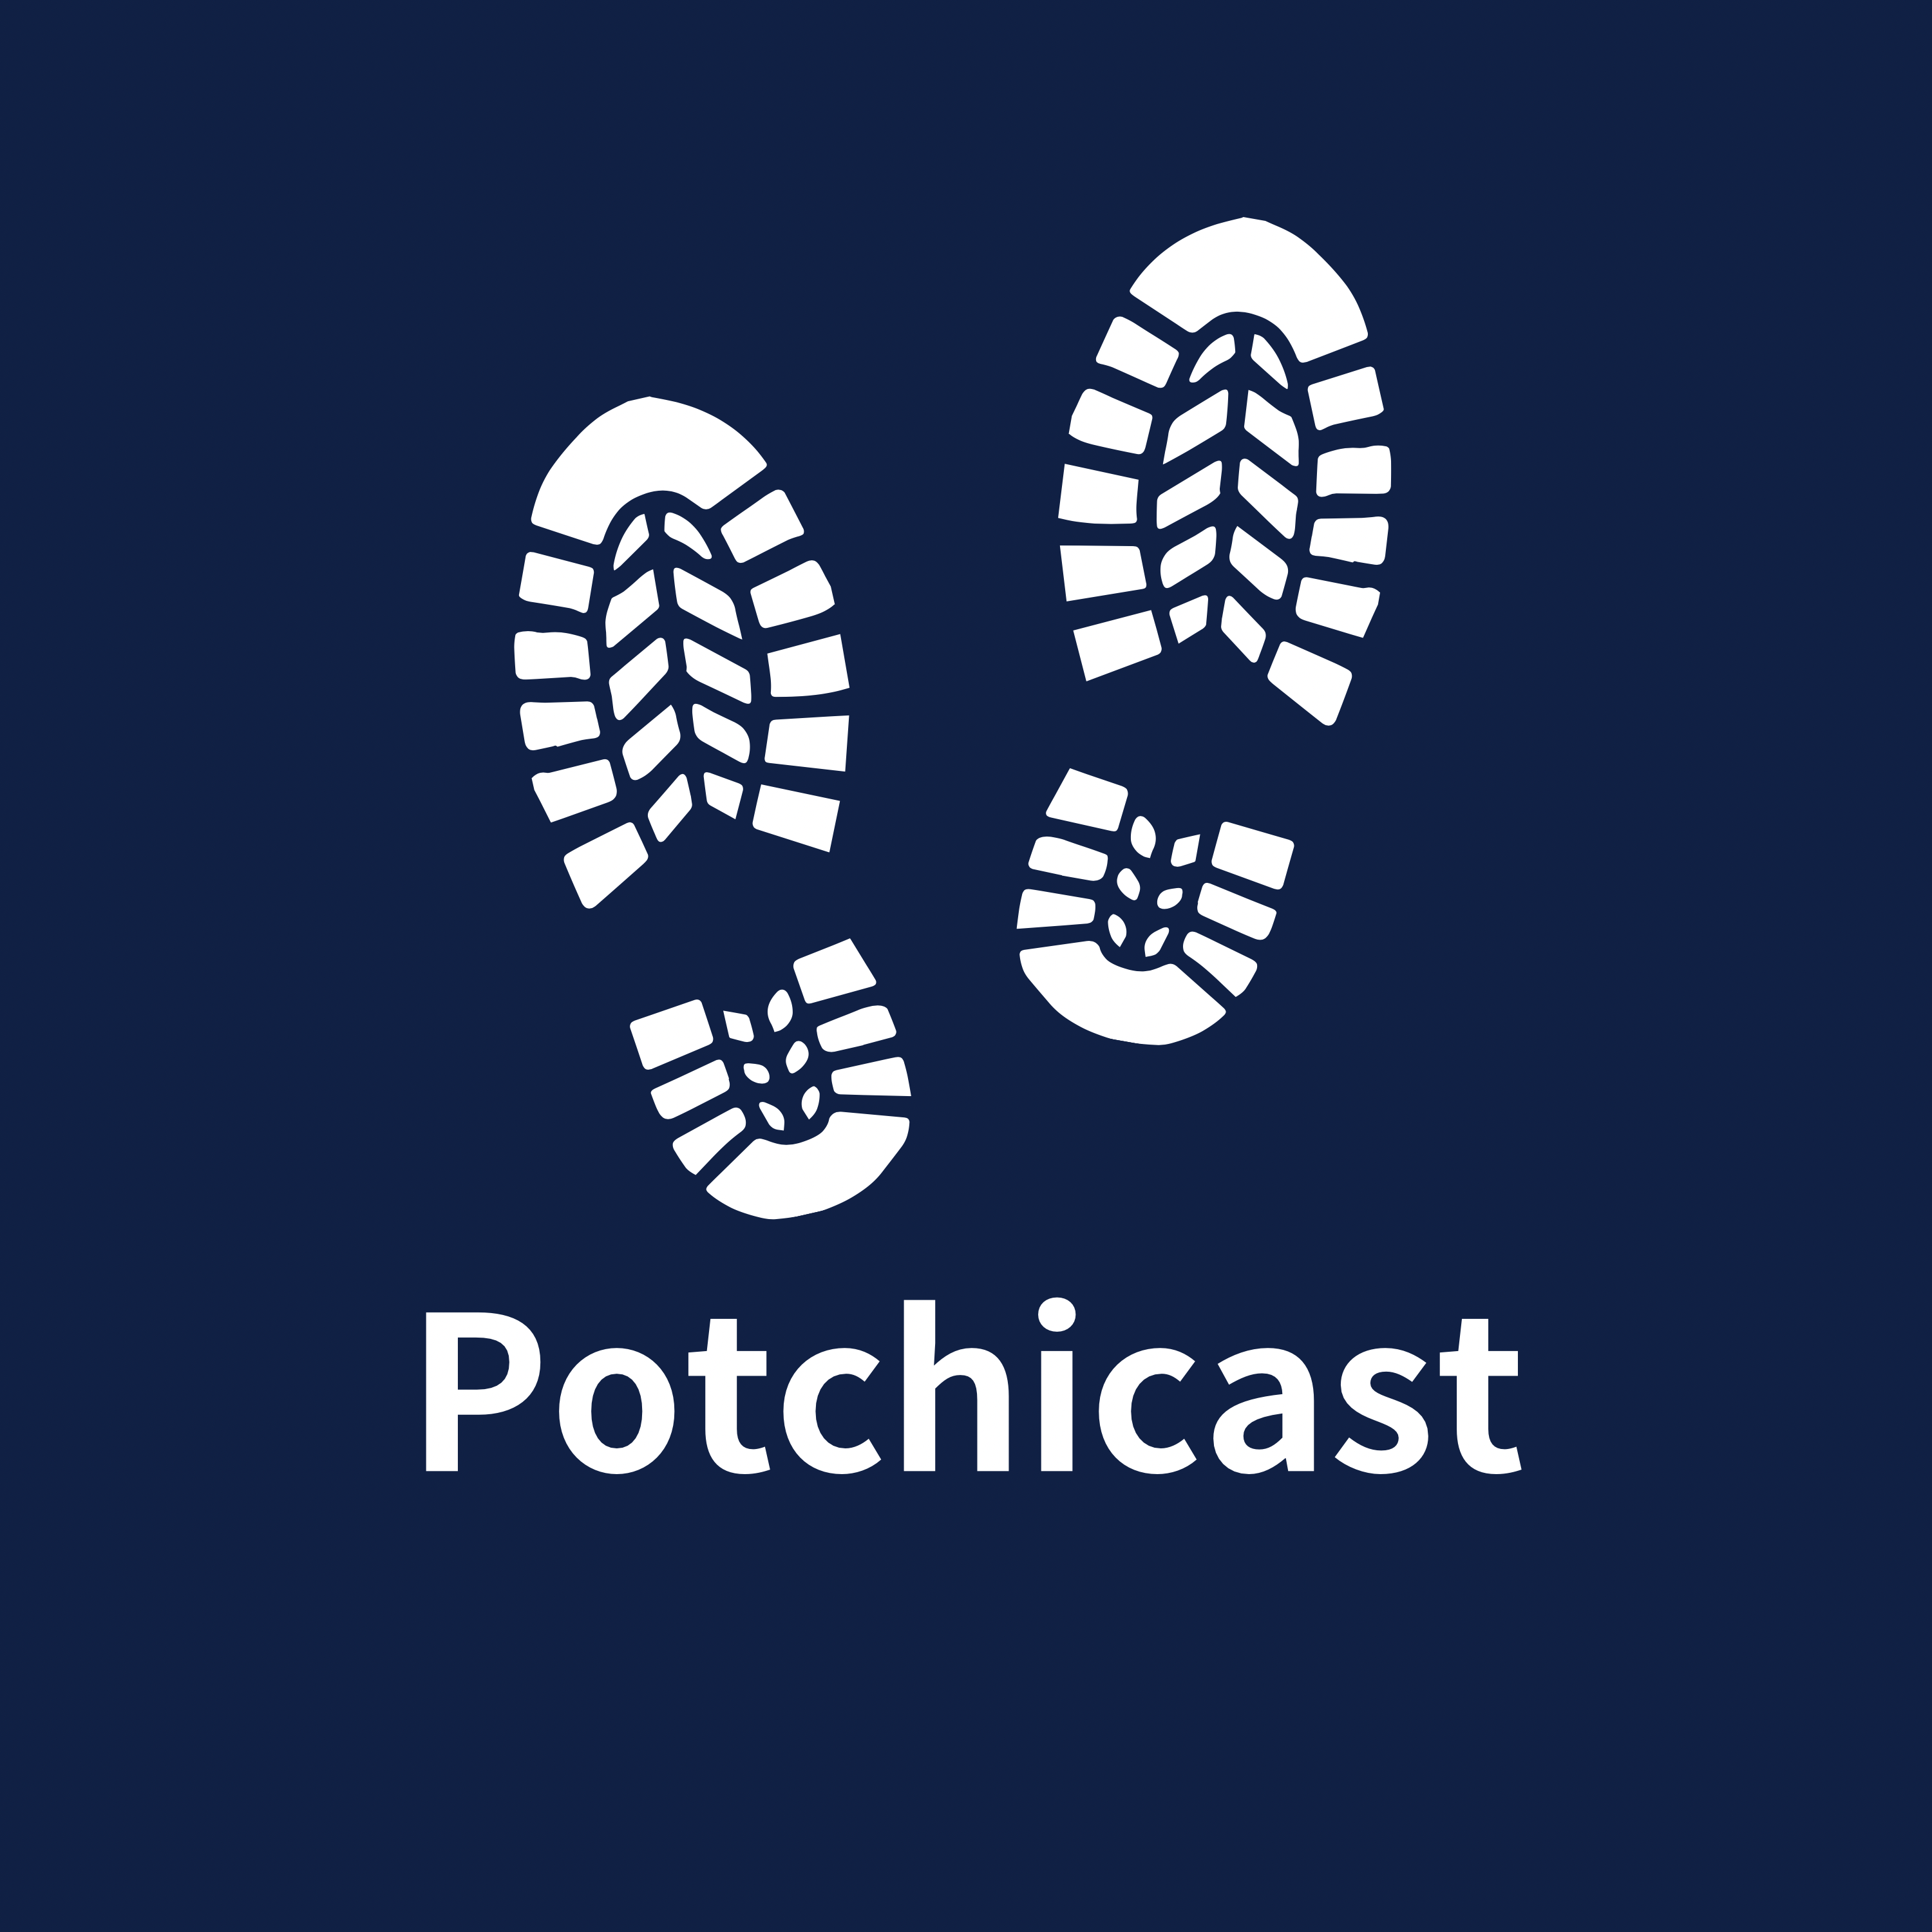 Potchicast